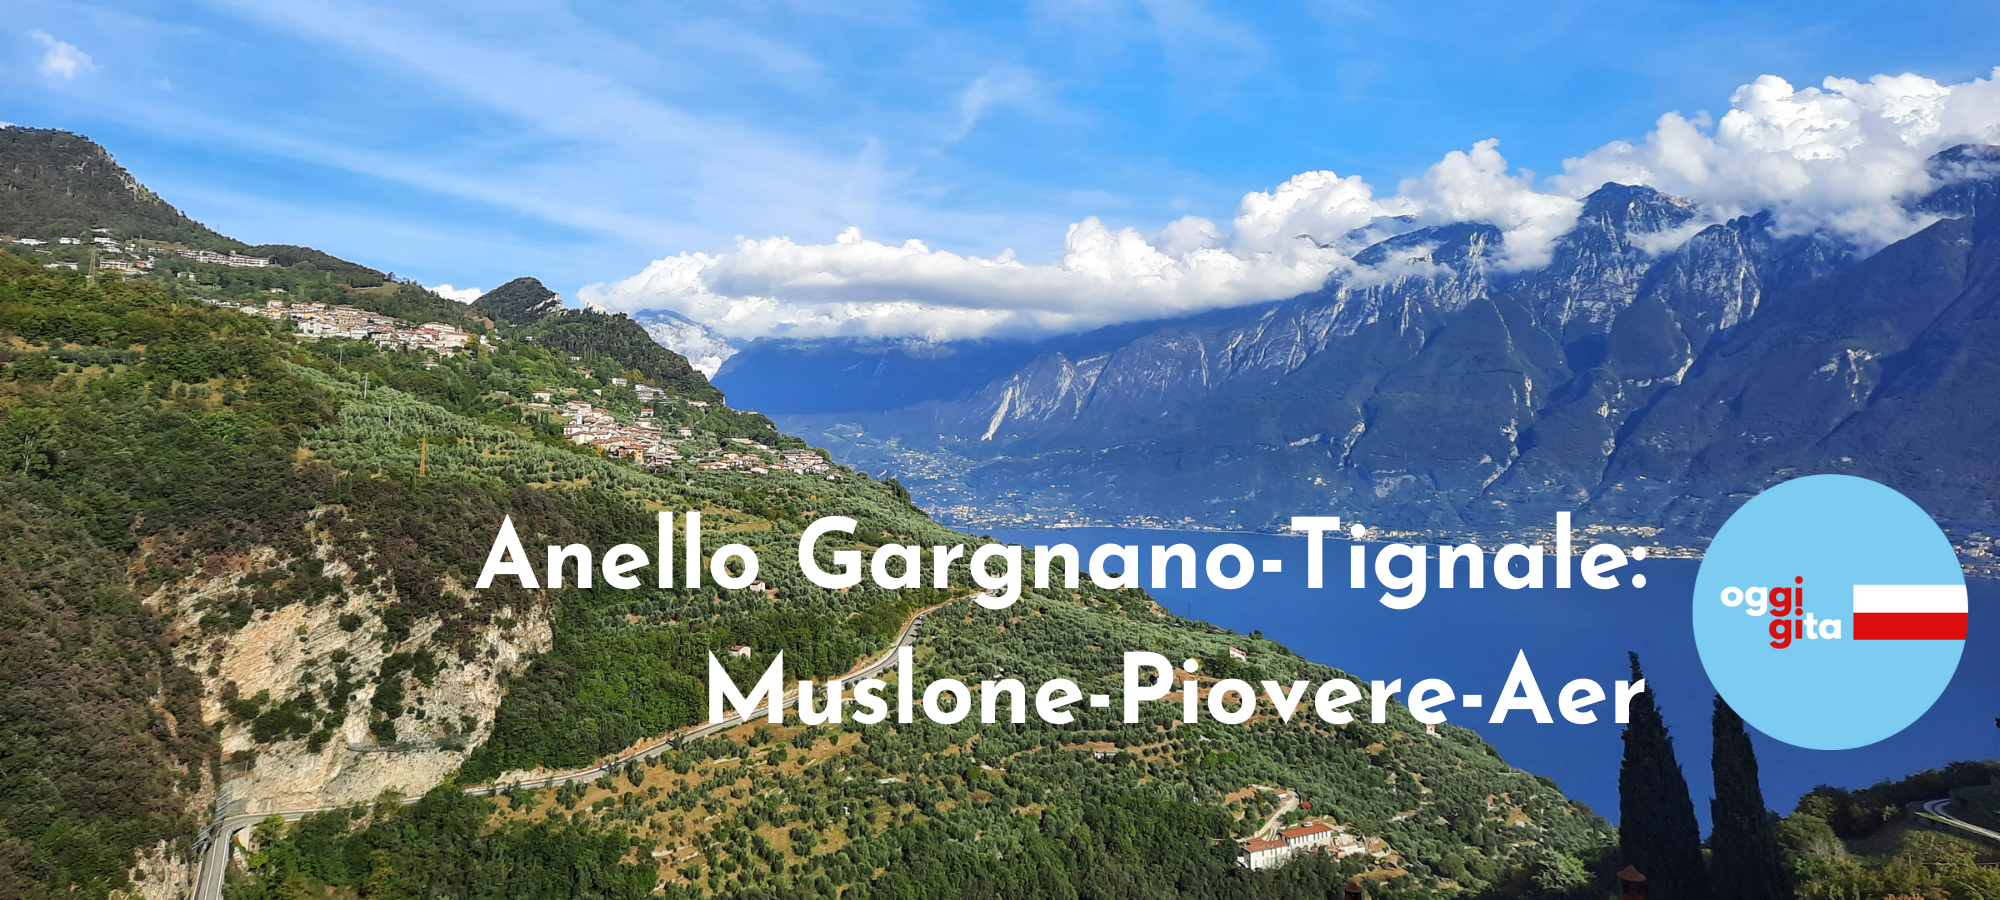 Anello Gargnano - Tignale - Sentieri e Trekking Lago di Garda